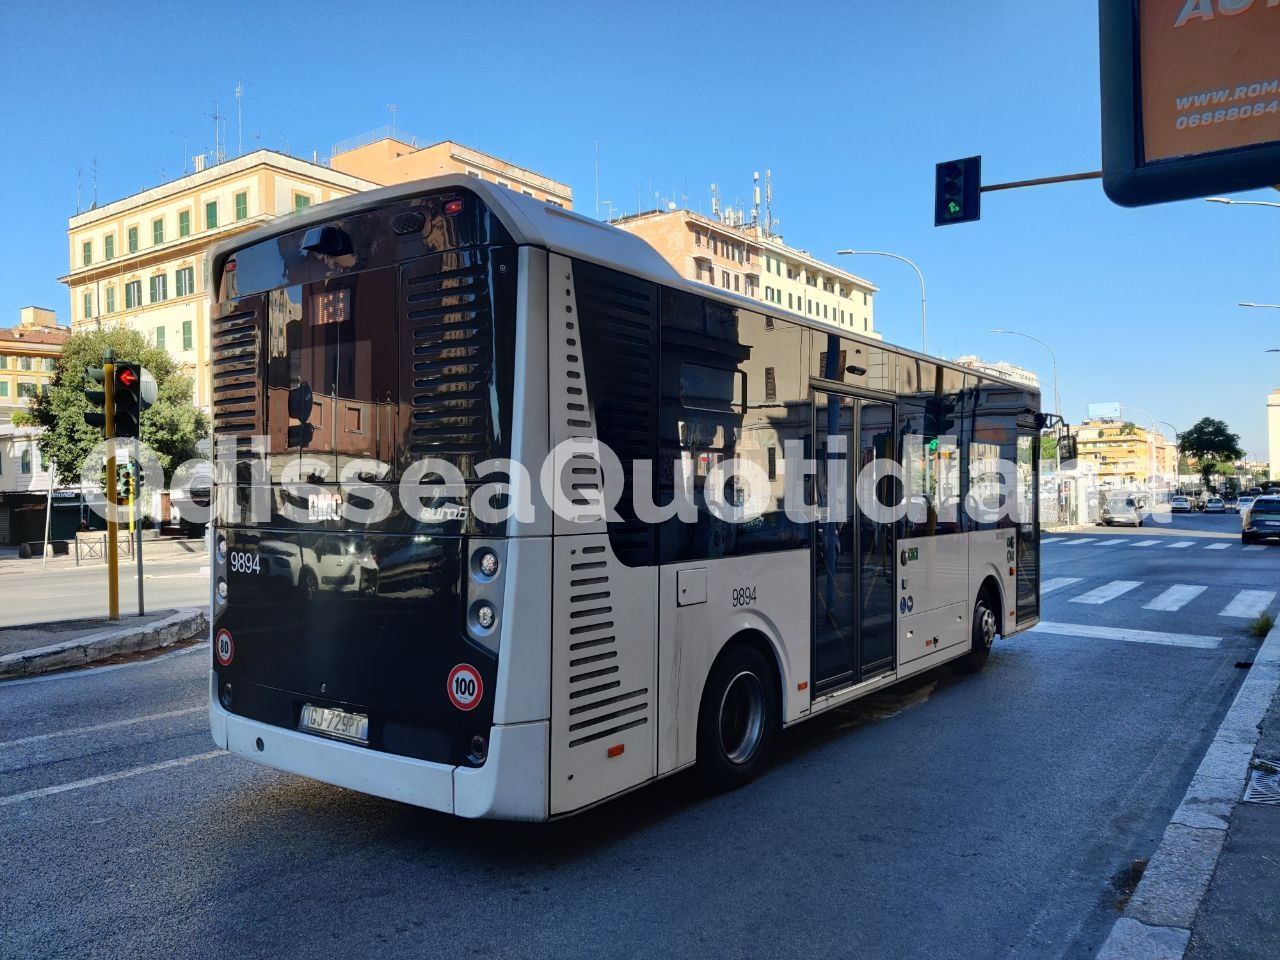 Trasporto pubblico: arrivano 66 milioni dalla Regione Lazio